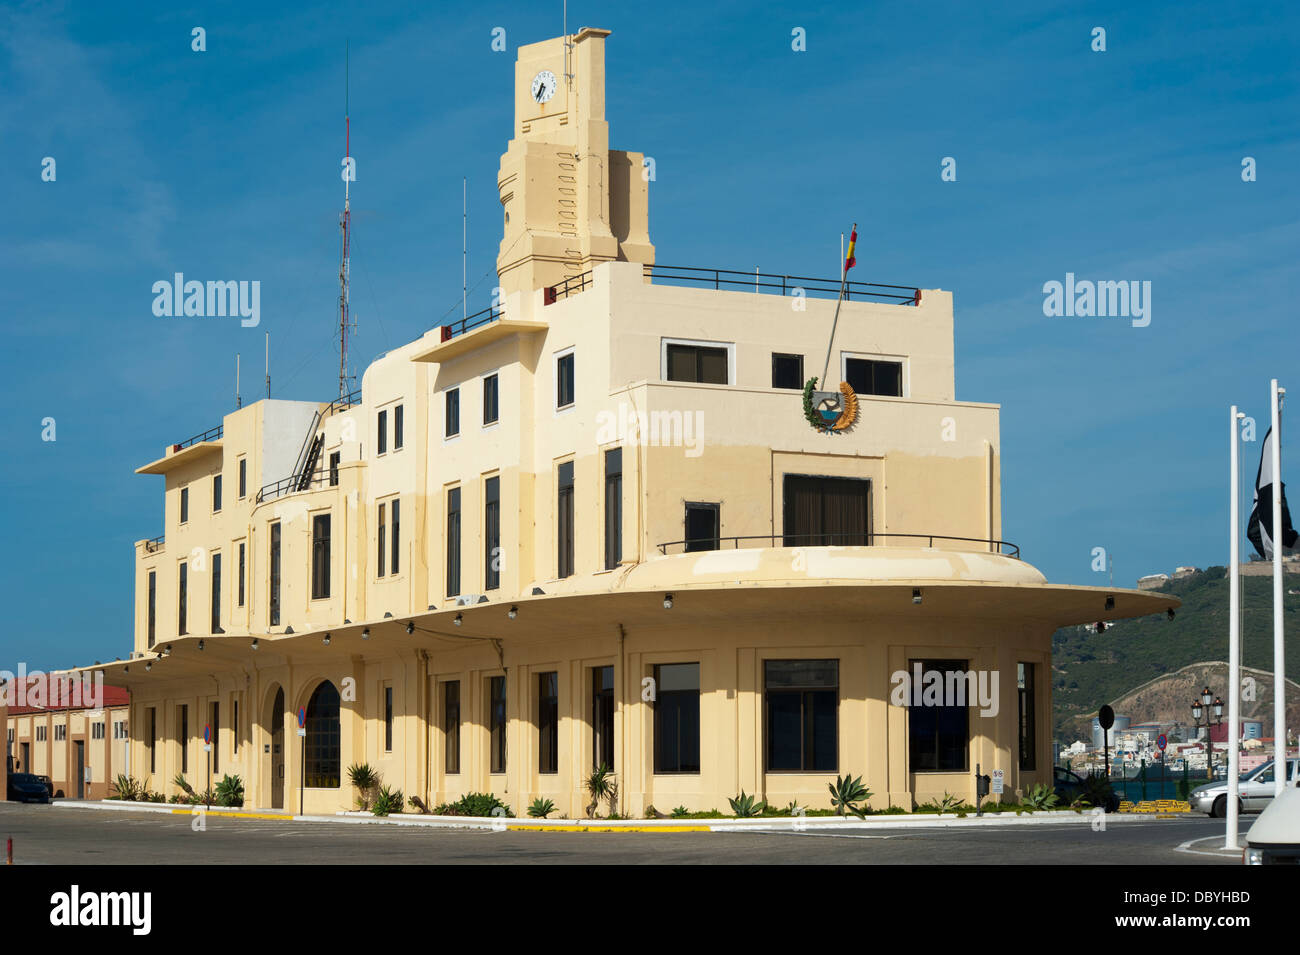 Die Bootsform Art-Deco-Gebäude, Sitz der Ceuta Hafen Behörde von Manuel Latorre Architekten. Ceuta. Spanien. Stockfoto